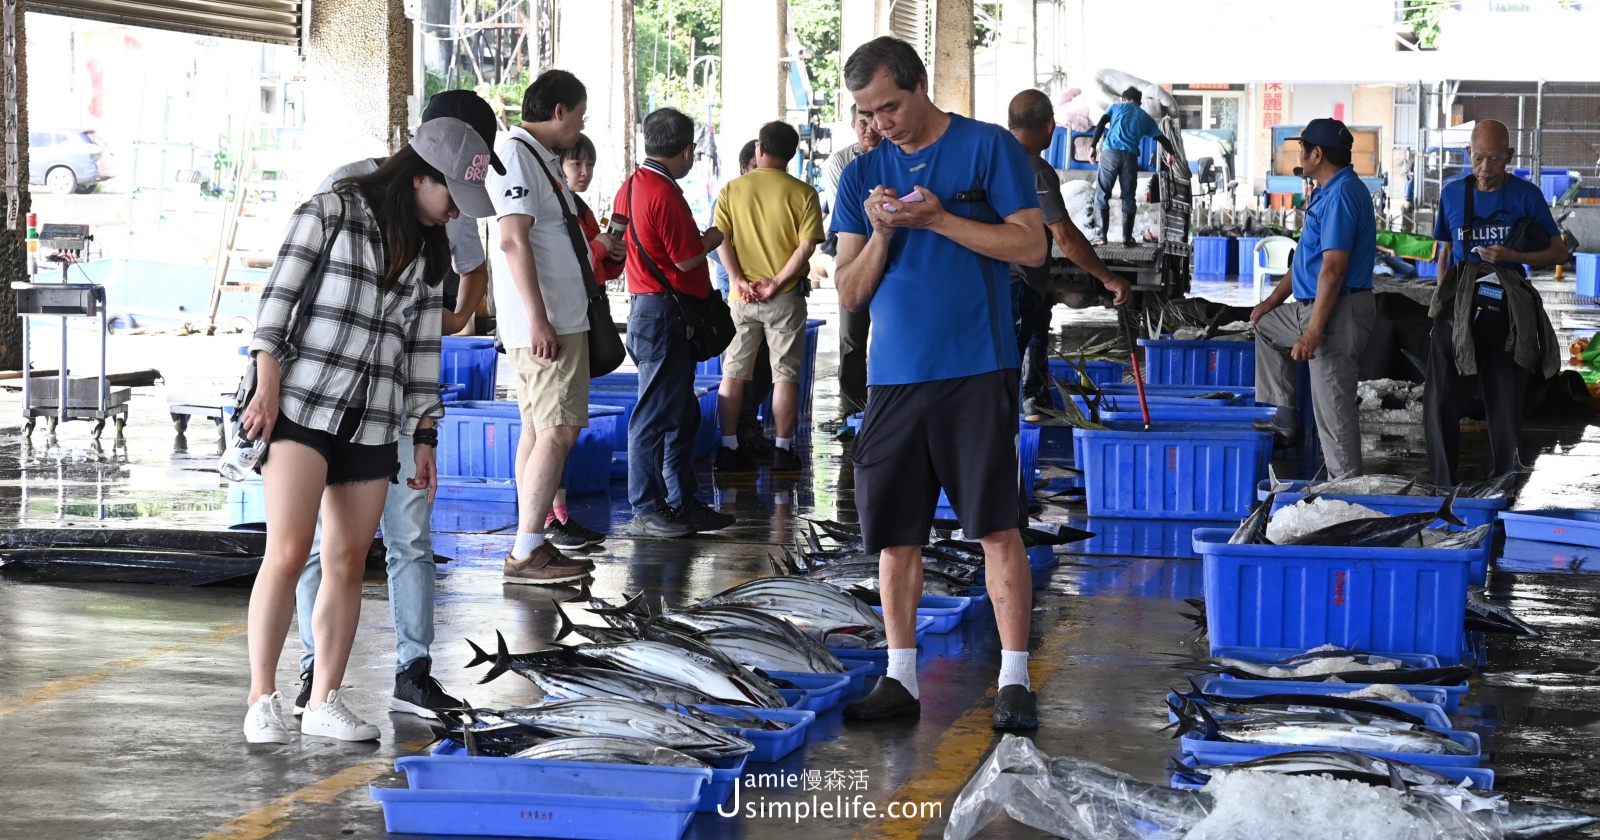 東部海岸最大！旗魚、海產漁獲當天新鮮供應「新港漁港」